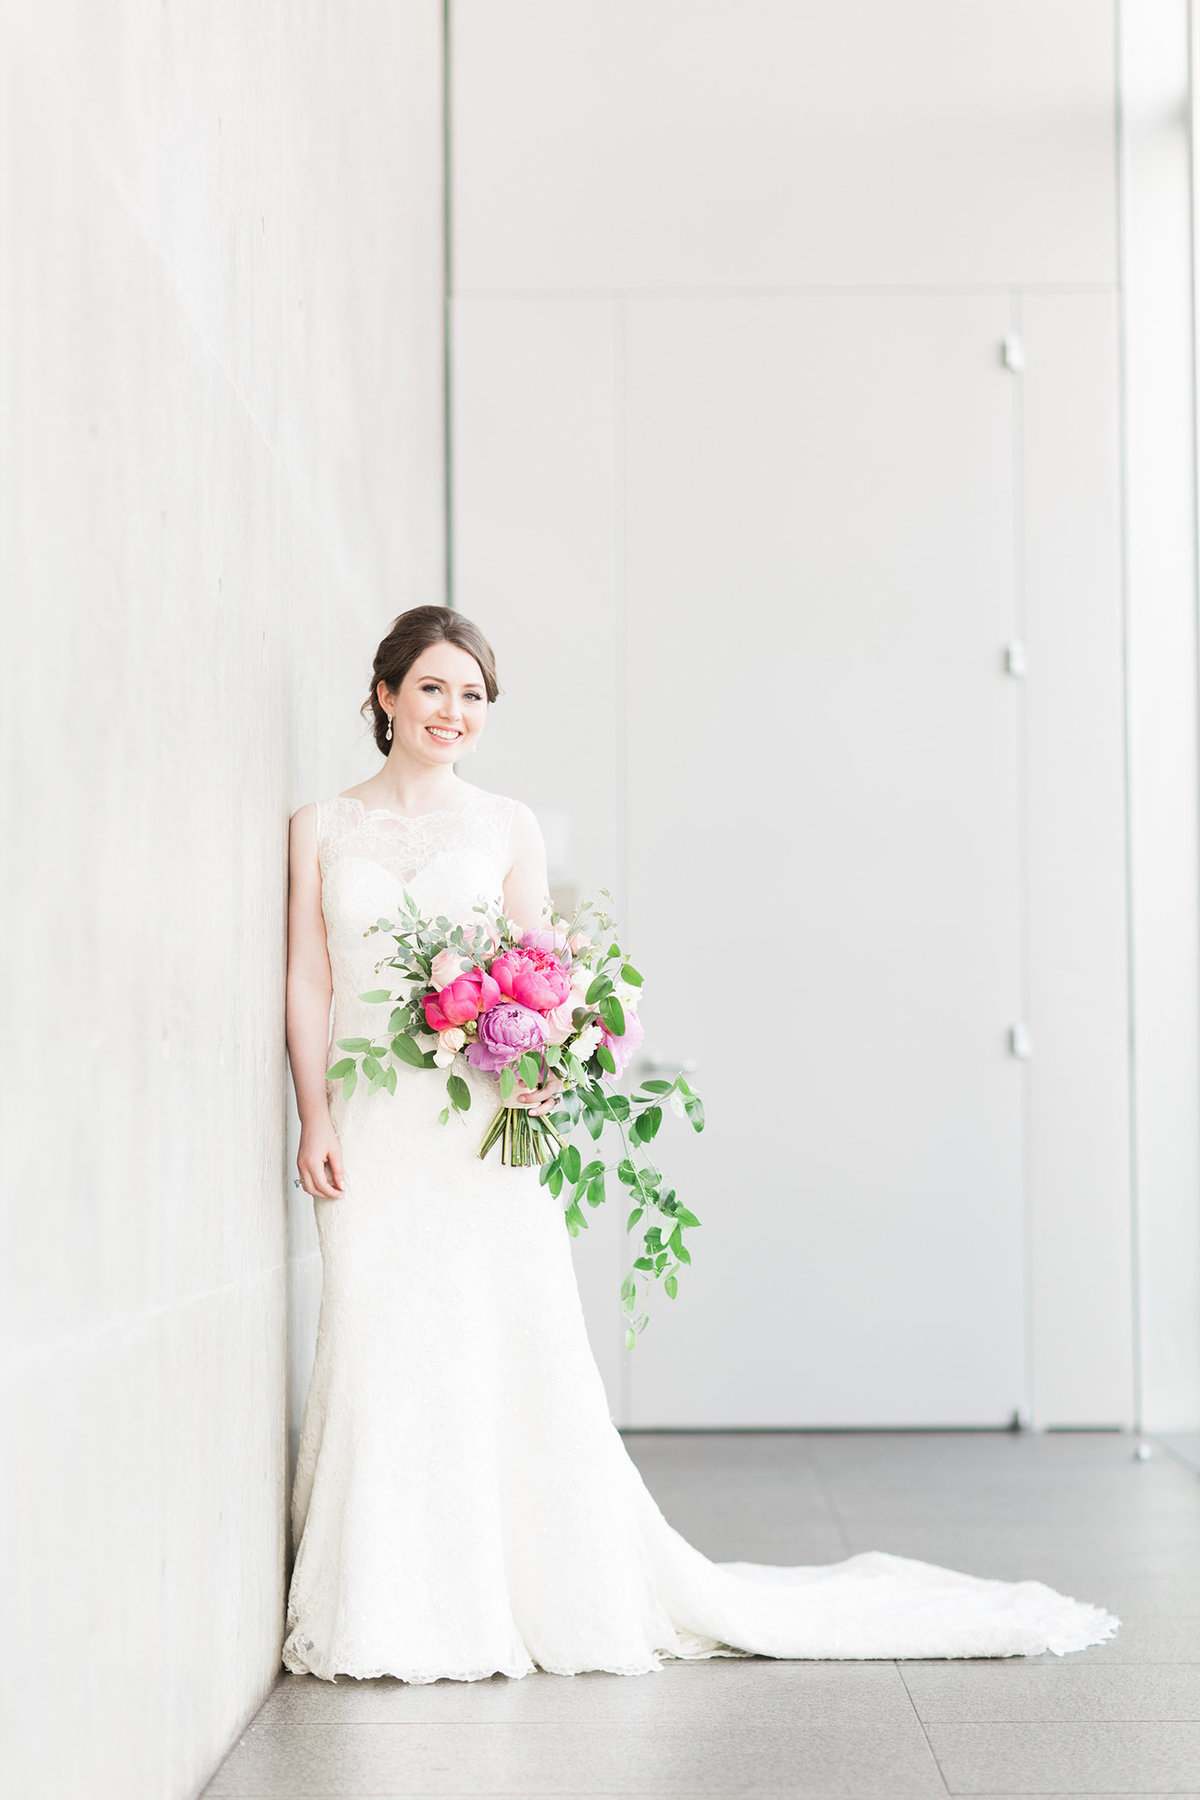 DFW Wedding Floral Design - A Stylish Soiree00001